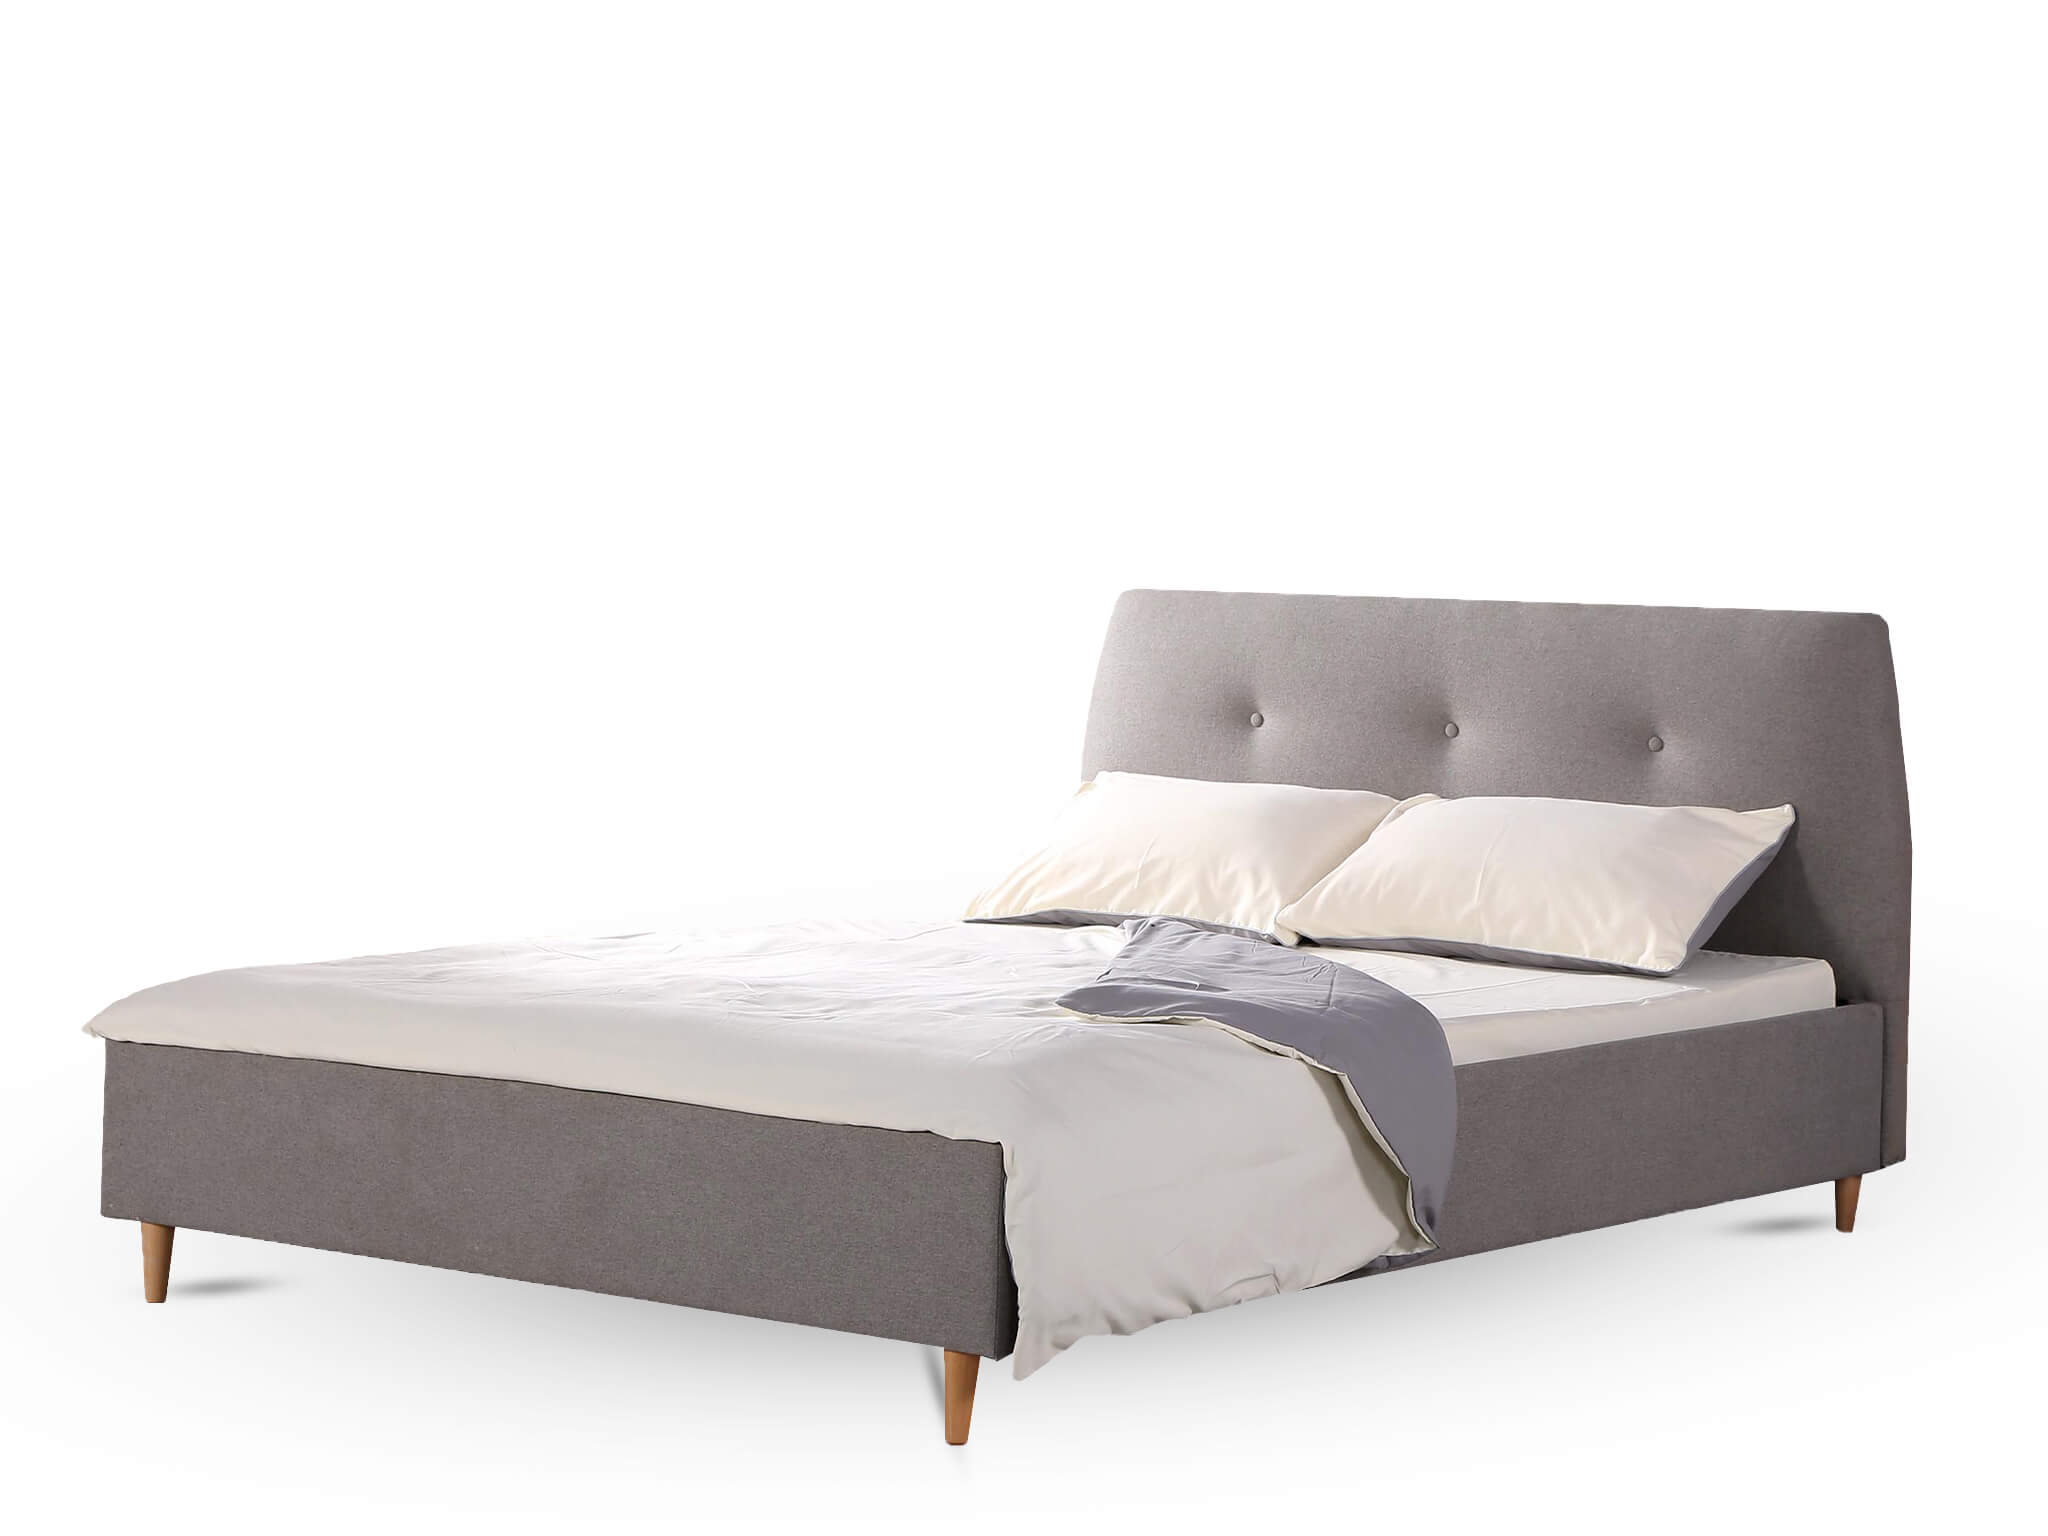 HL Čalúnená manželská posteľ Doris 160 x 200 - sivá